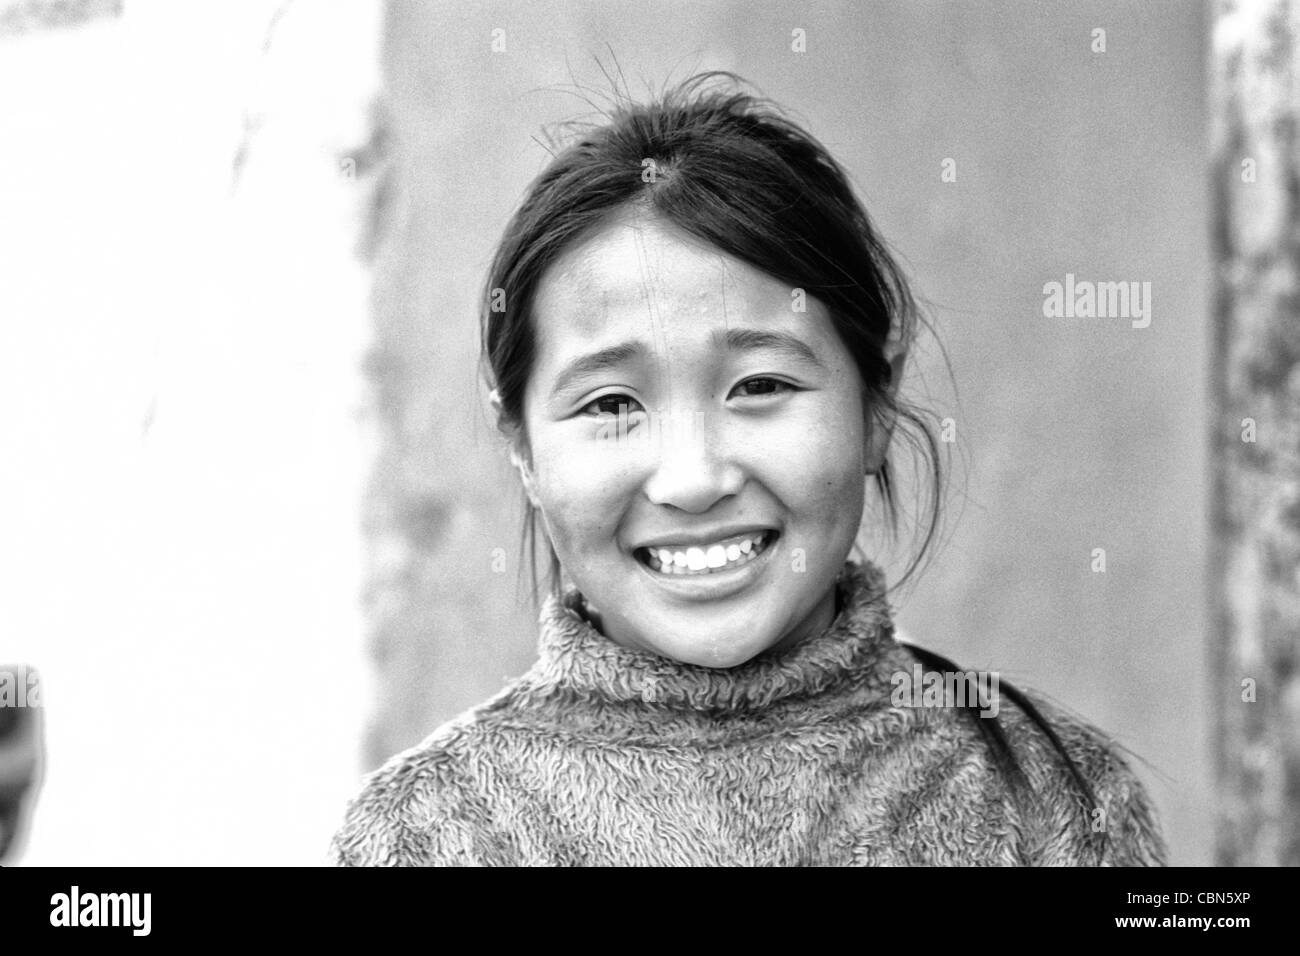 Belle Jeune Fille De 13 Ans En Mongolie Oulan Bator Photo Stock Alamy